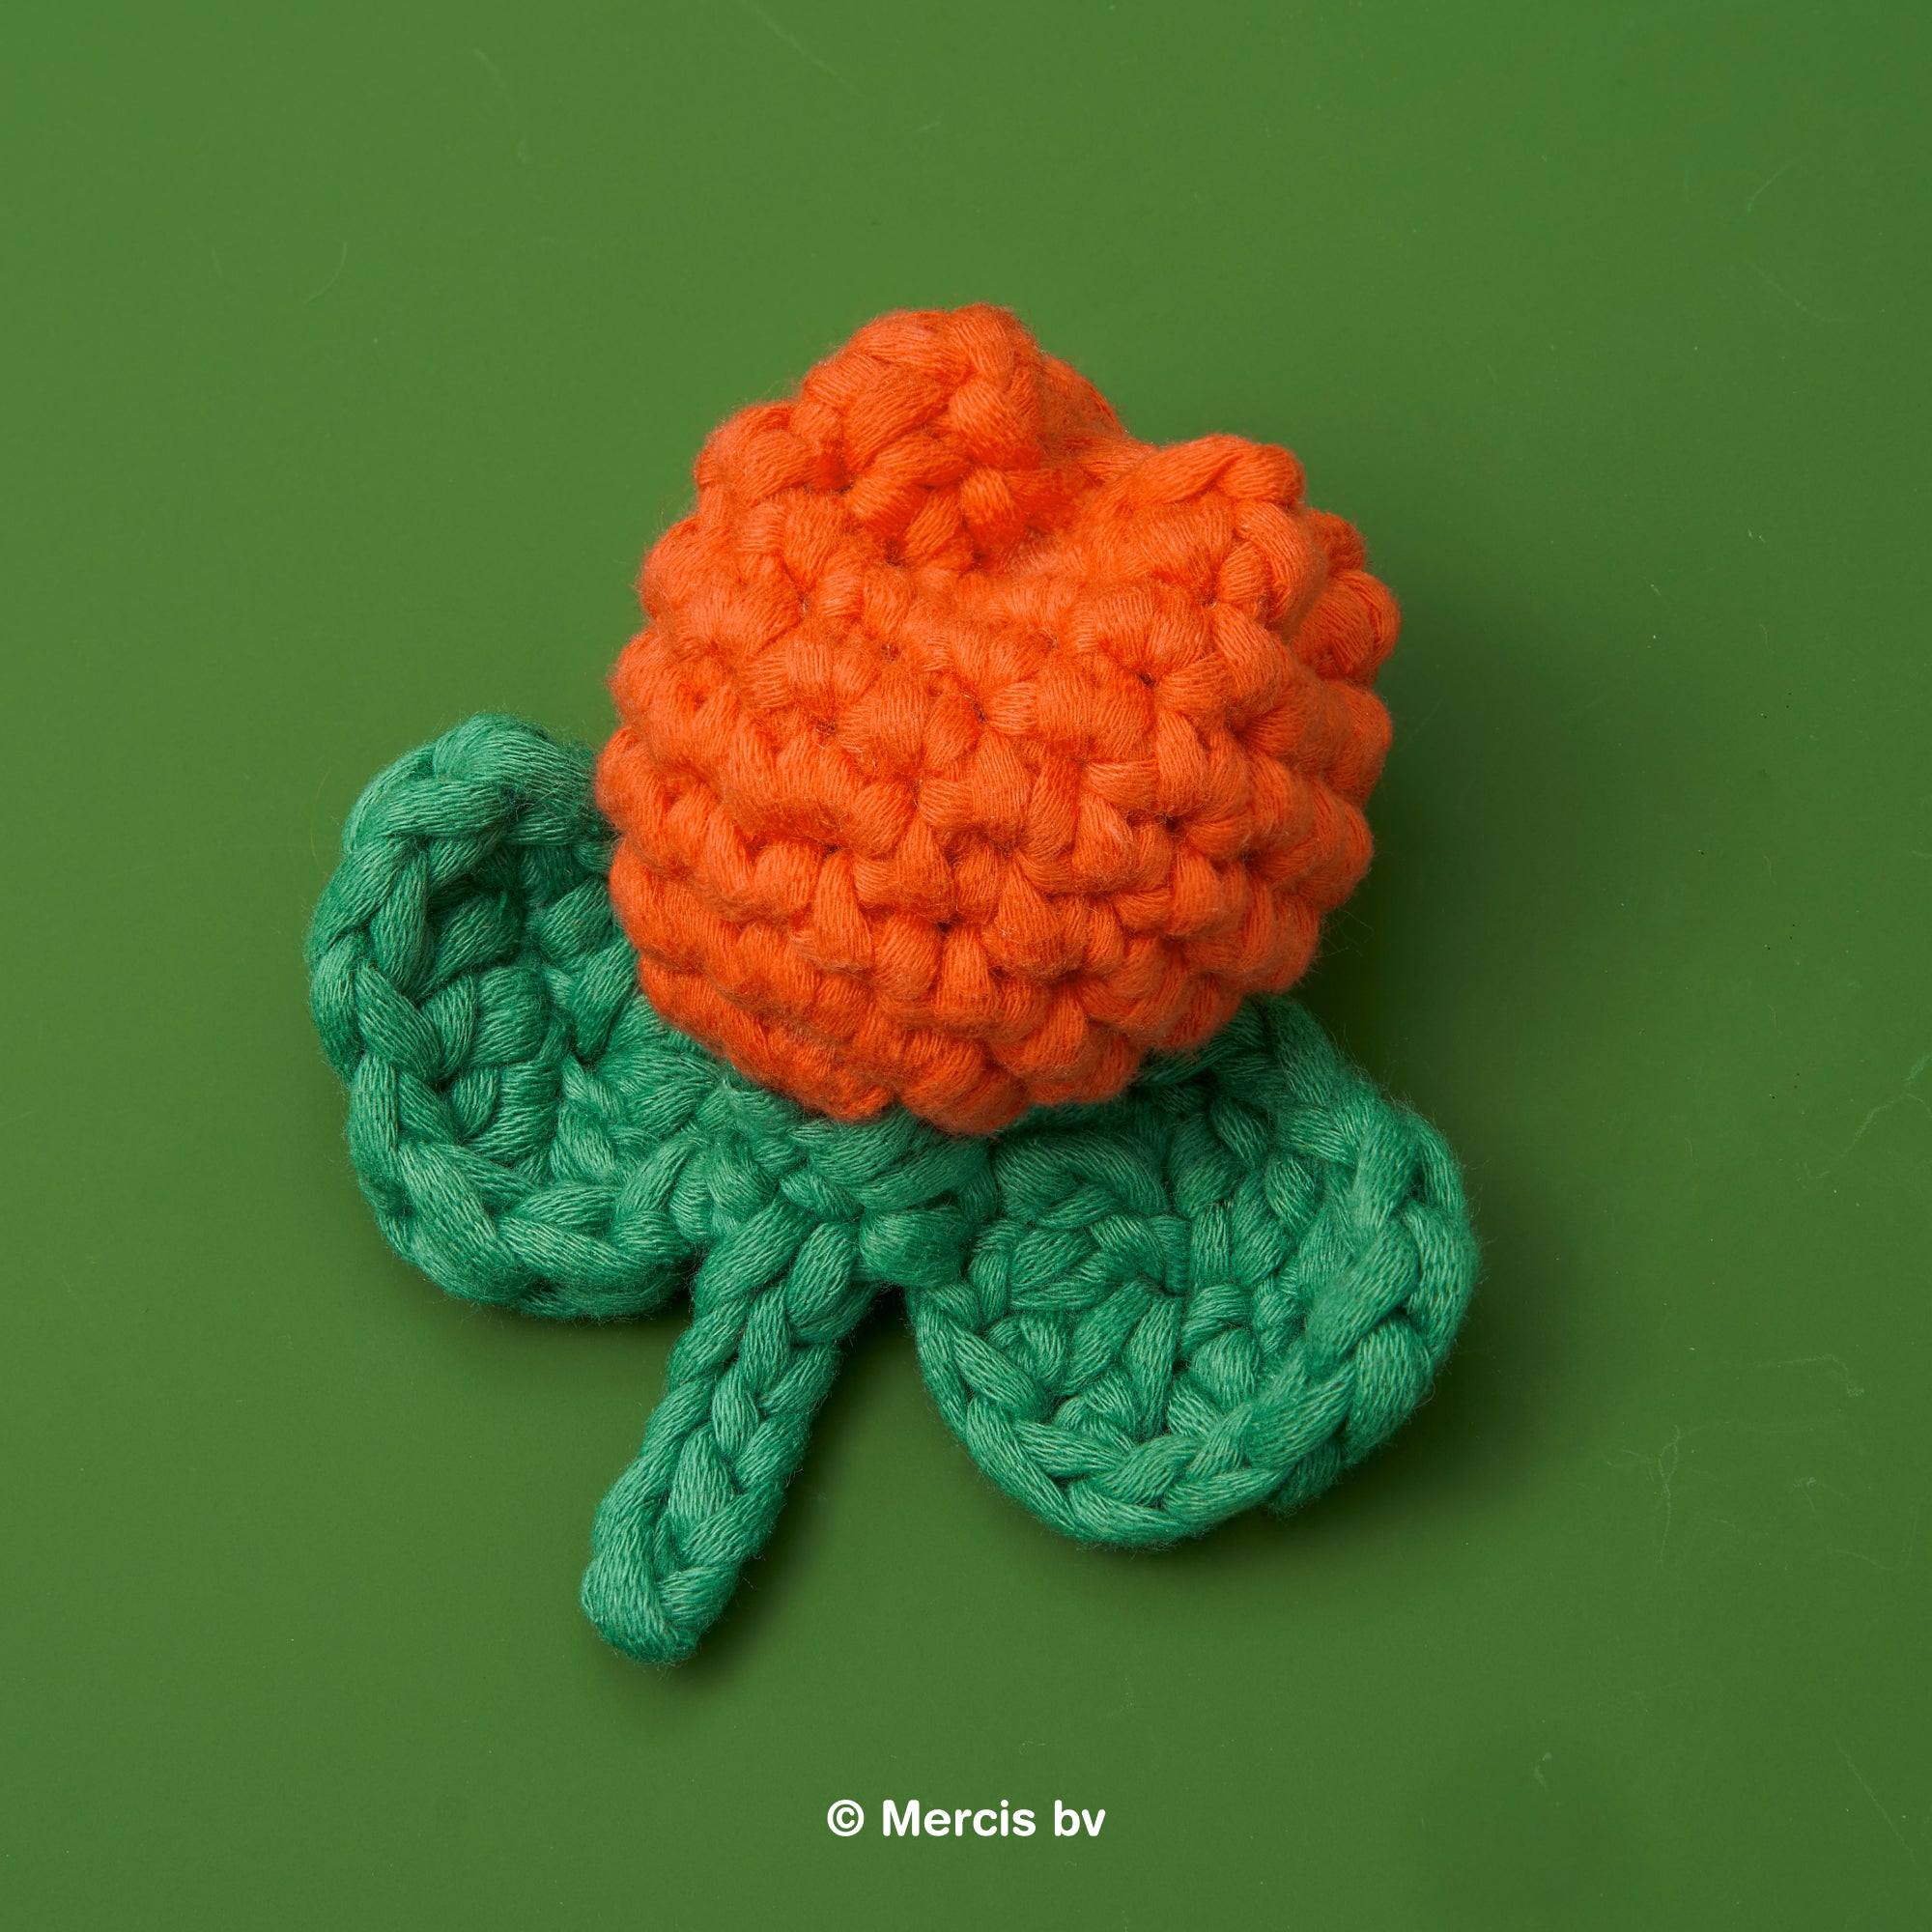 FREE miffy free pattern: Crochet pattern